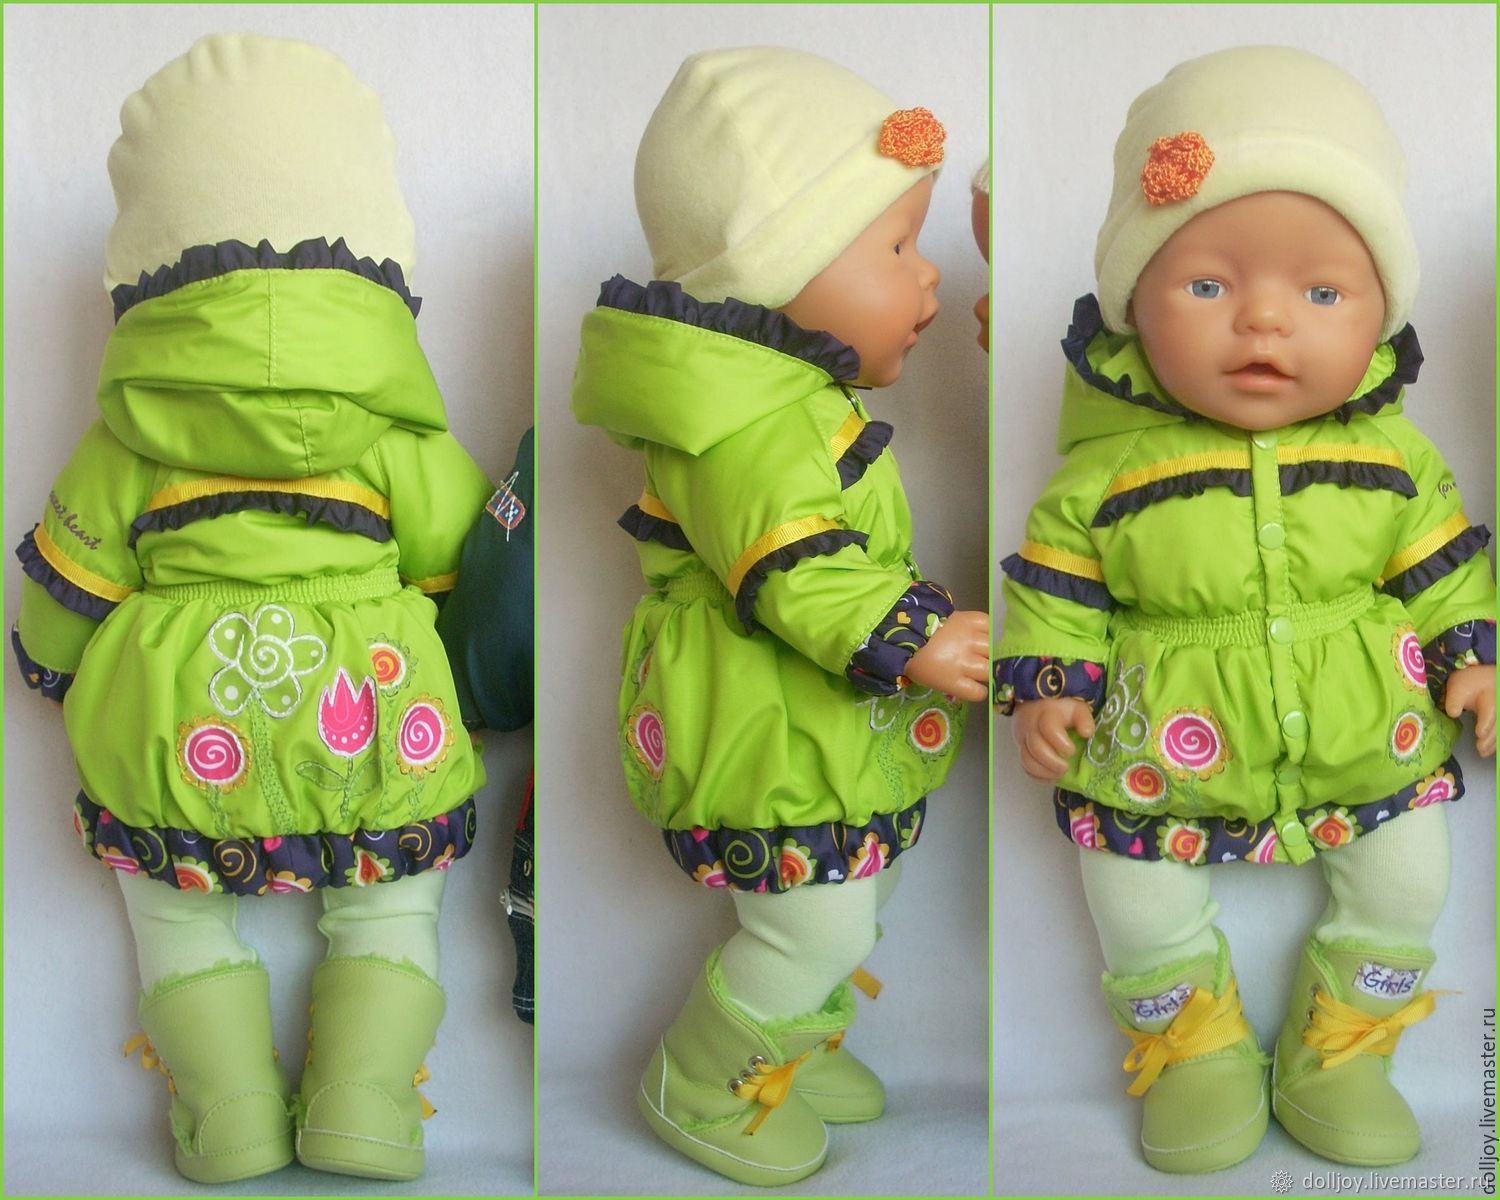 Беби бон своими руками. Одежда для пупса. Кукла в зимней одежде. Курточка для куклы. Зимний комбинезон для куклы.